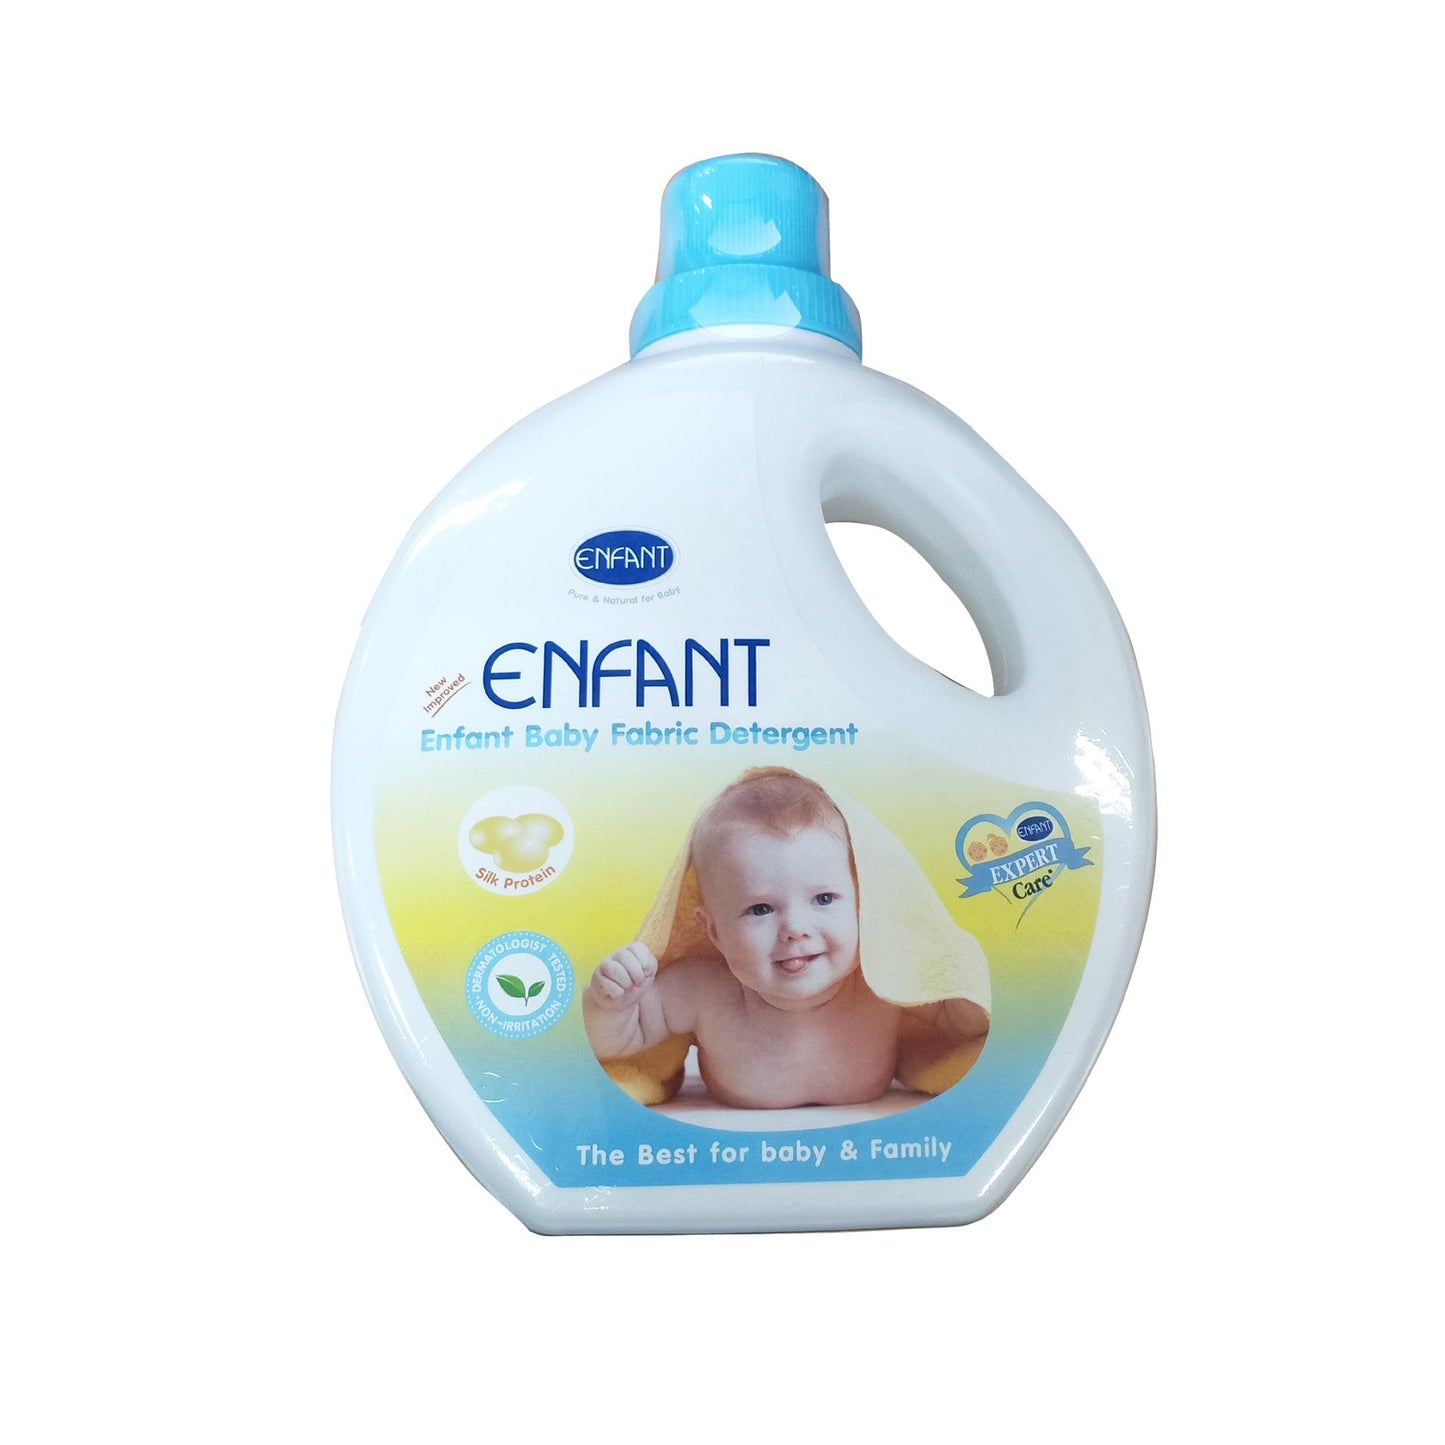 Enfant Fabric Wash Bottle 1 Liter